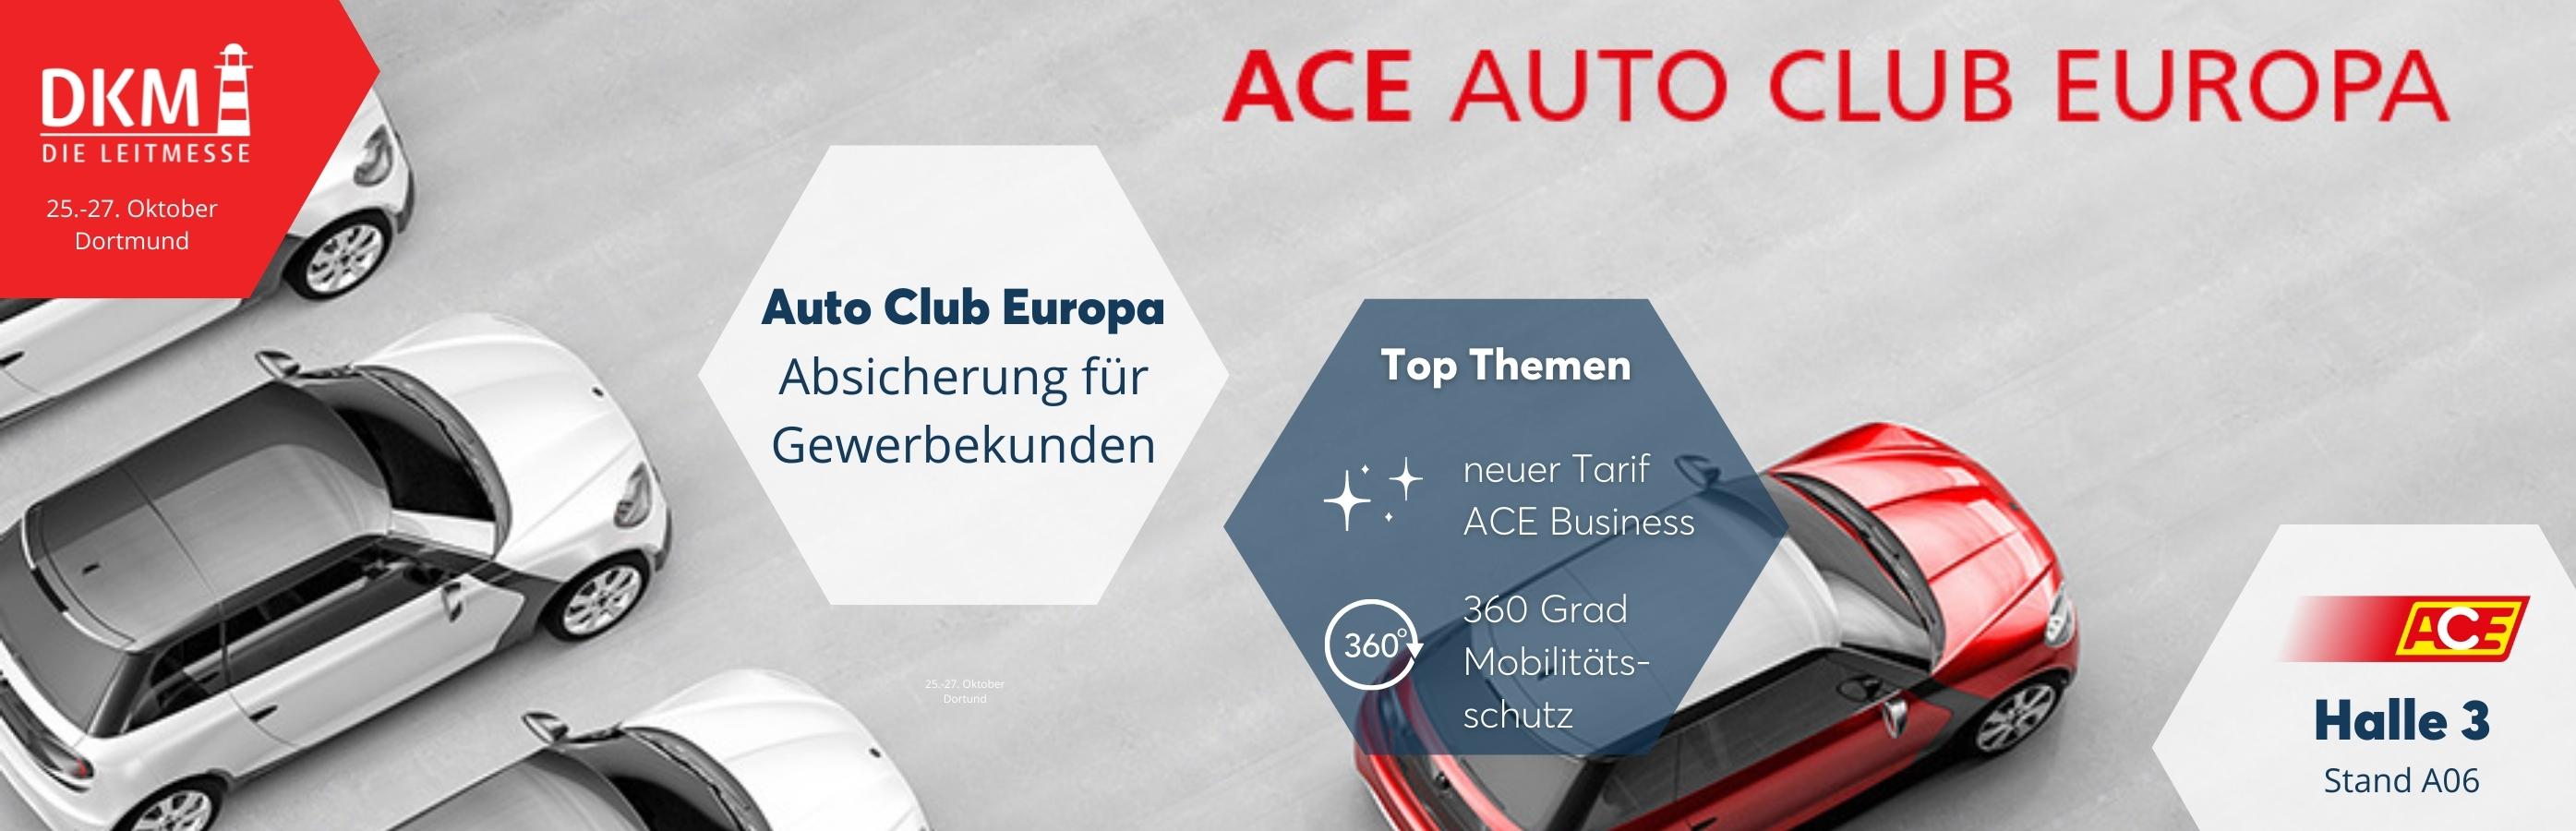 ACE Auto Club Europa - 7 gute Gründe für den neuen Gewerbetarif  